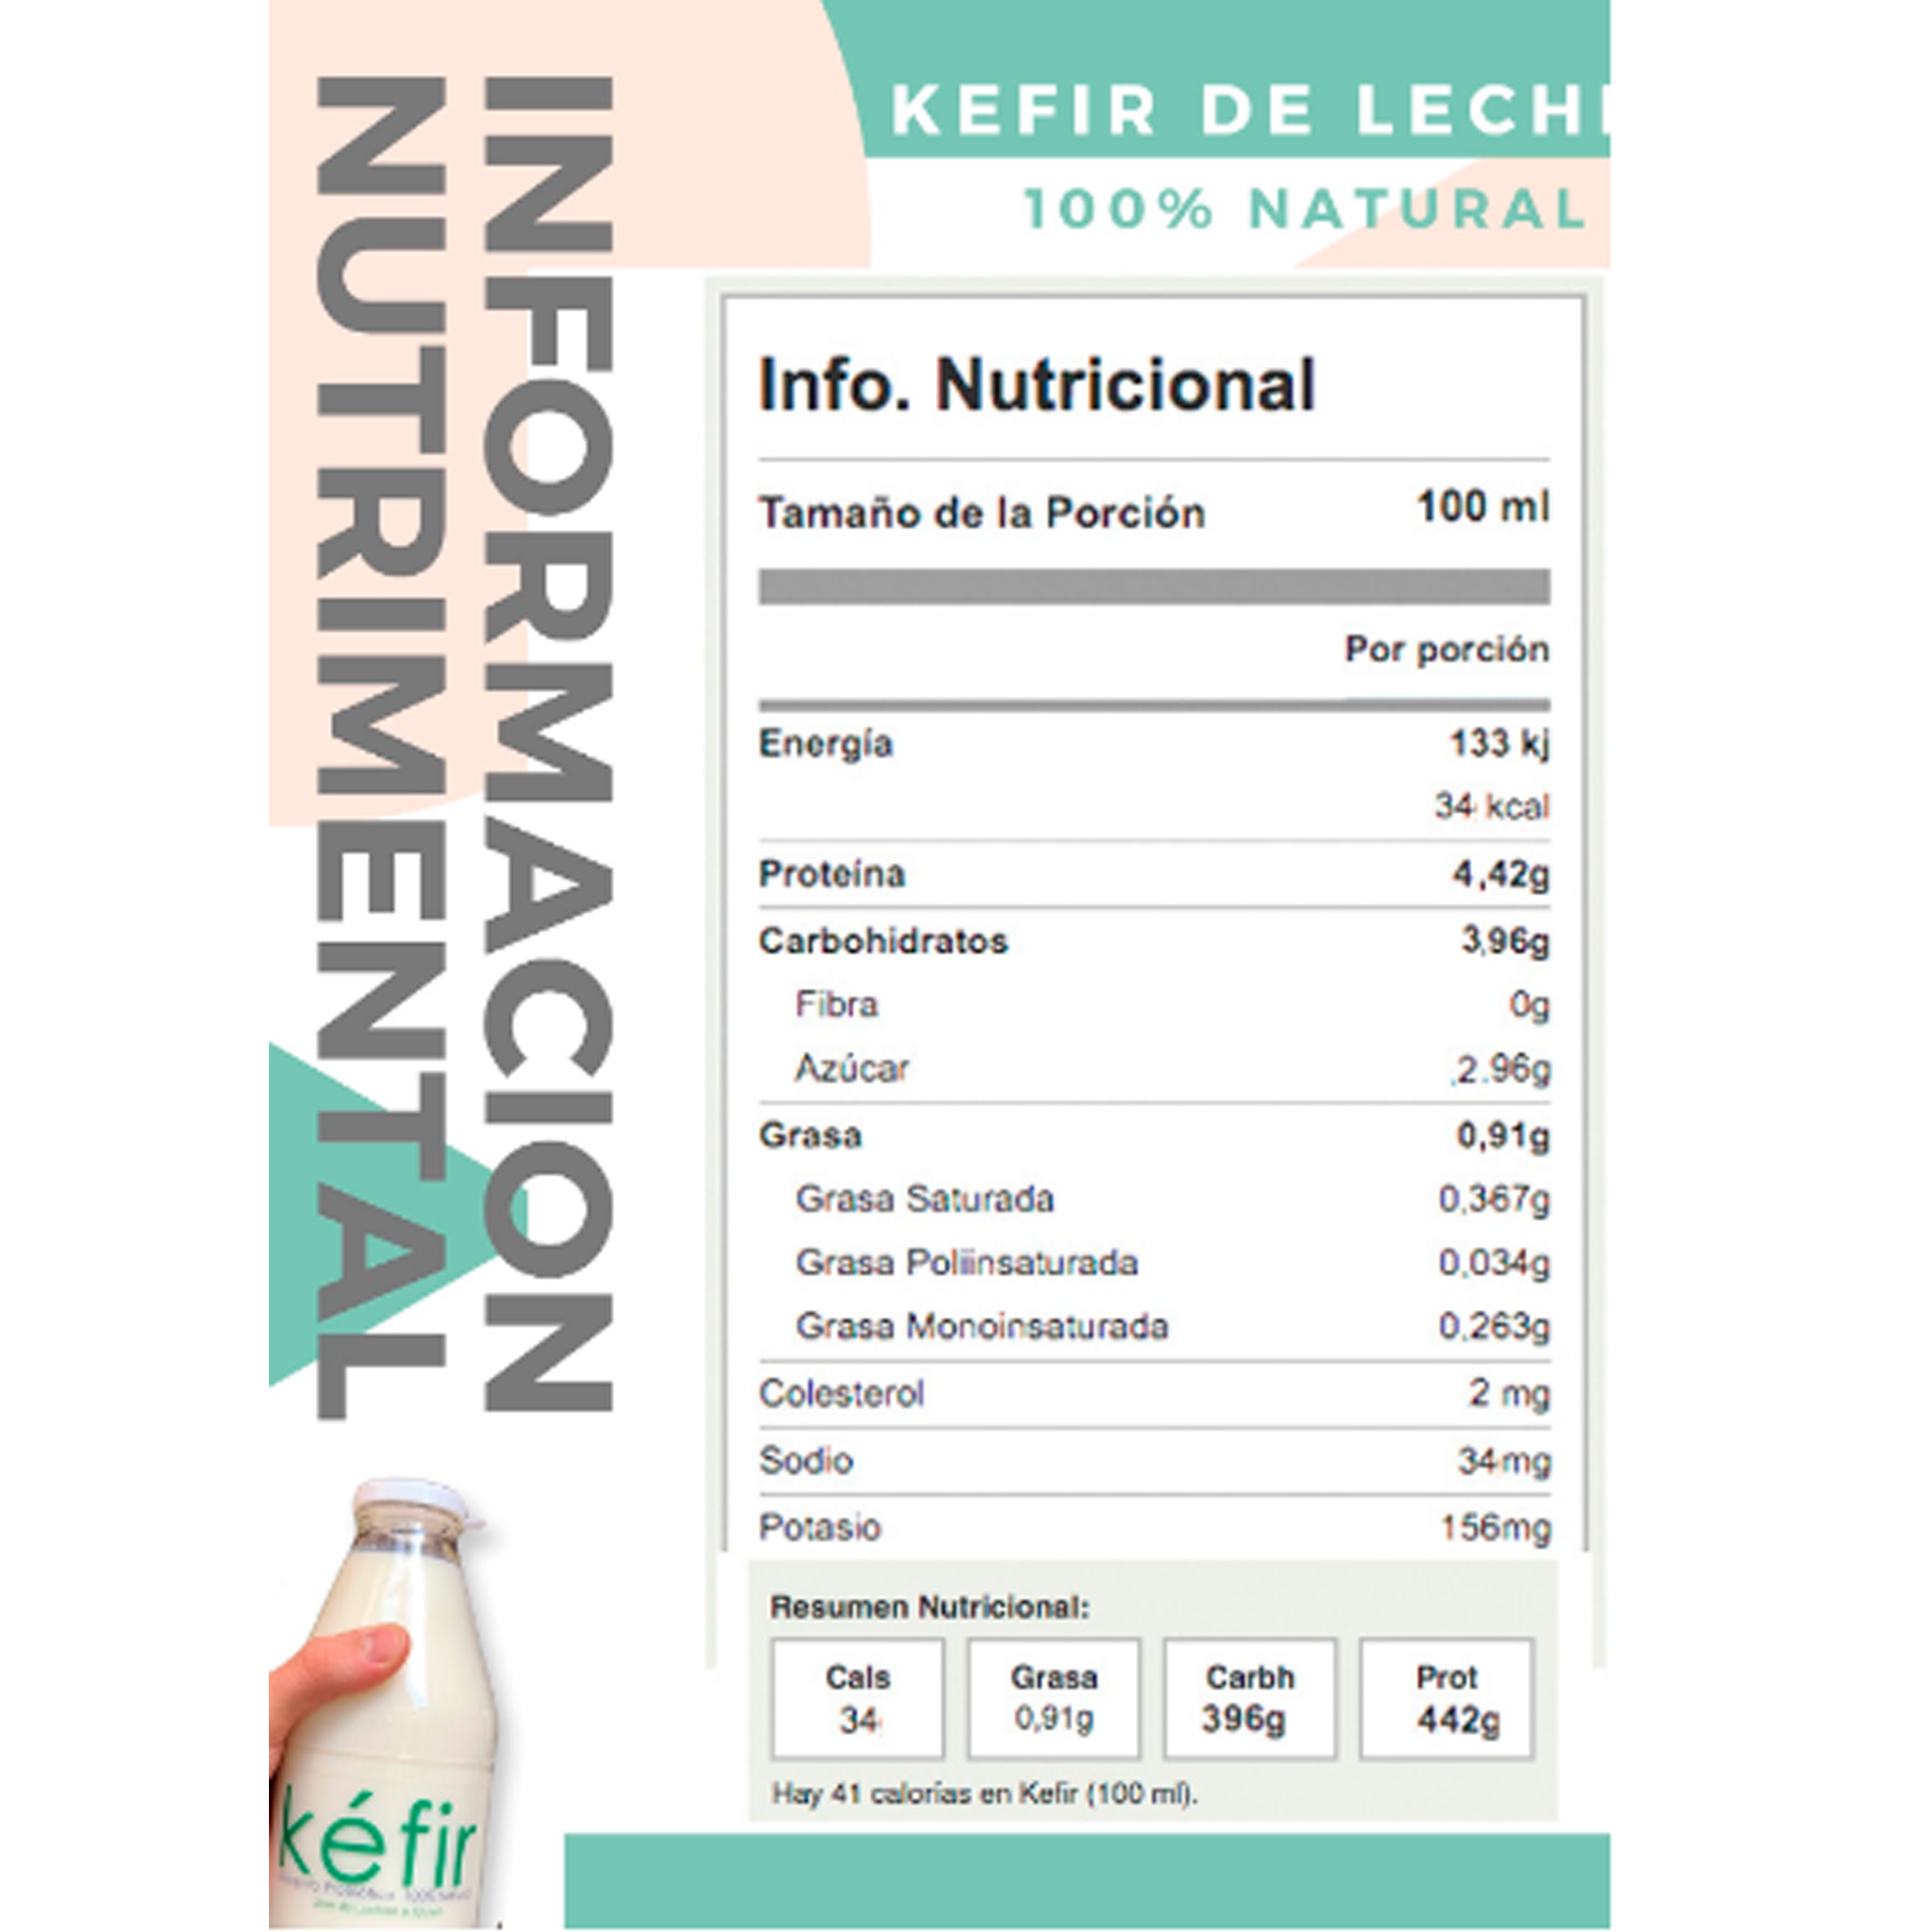 KEFIRGDL- Kefir de leche natural